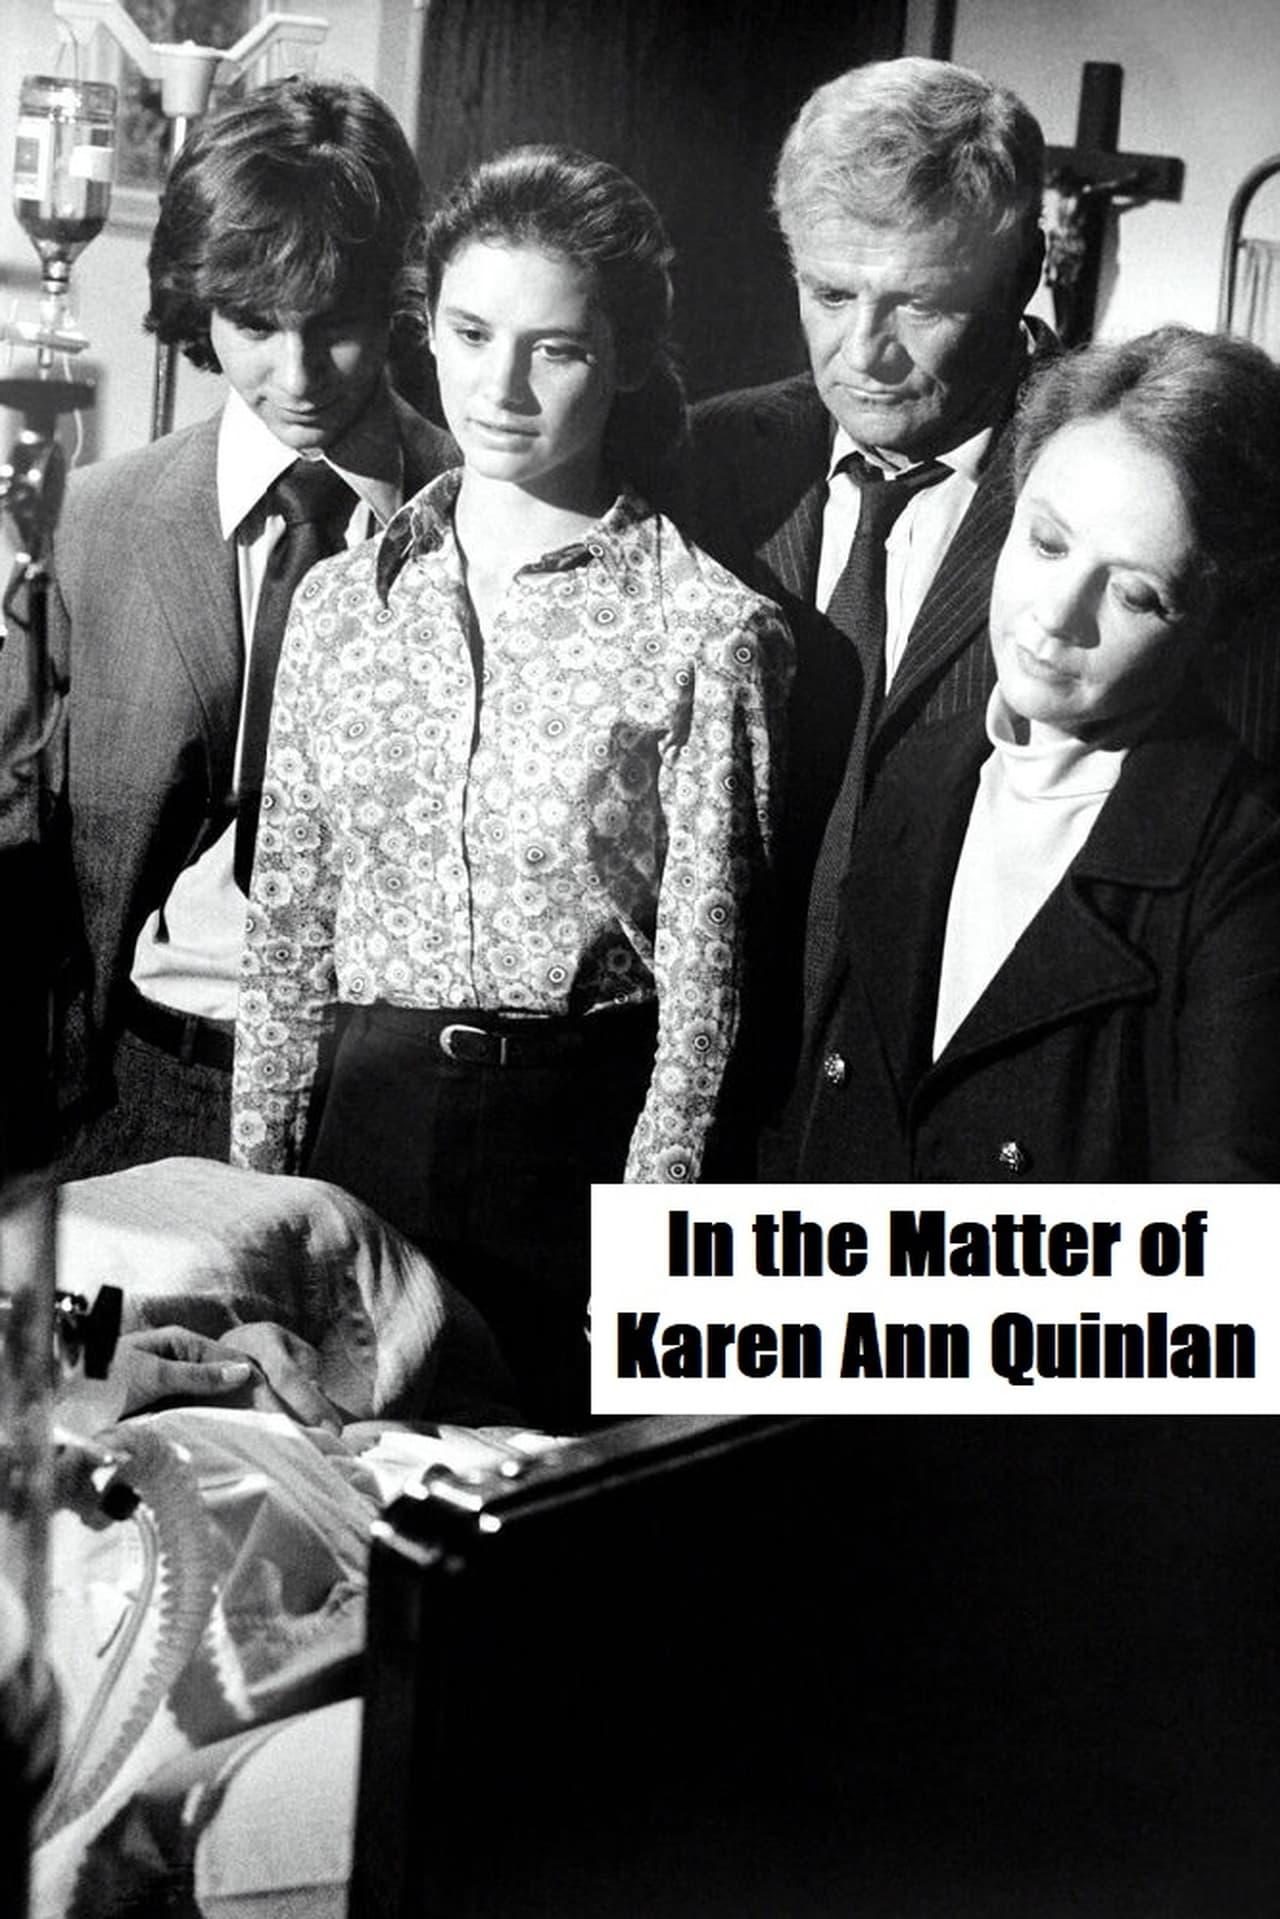 In the Matter of Karen Ann Quinlan poster